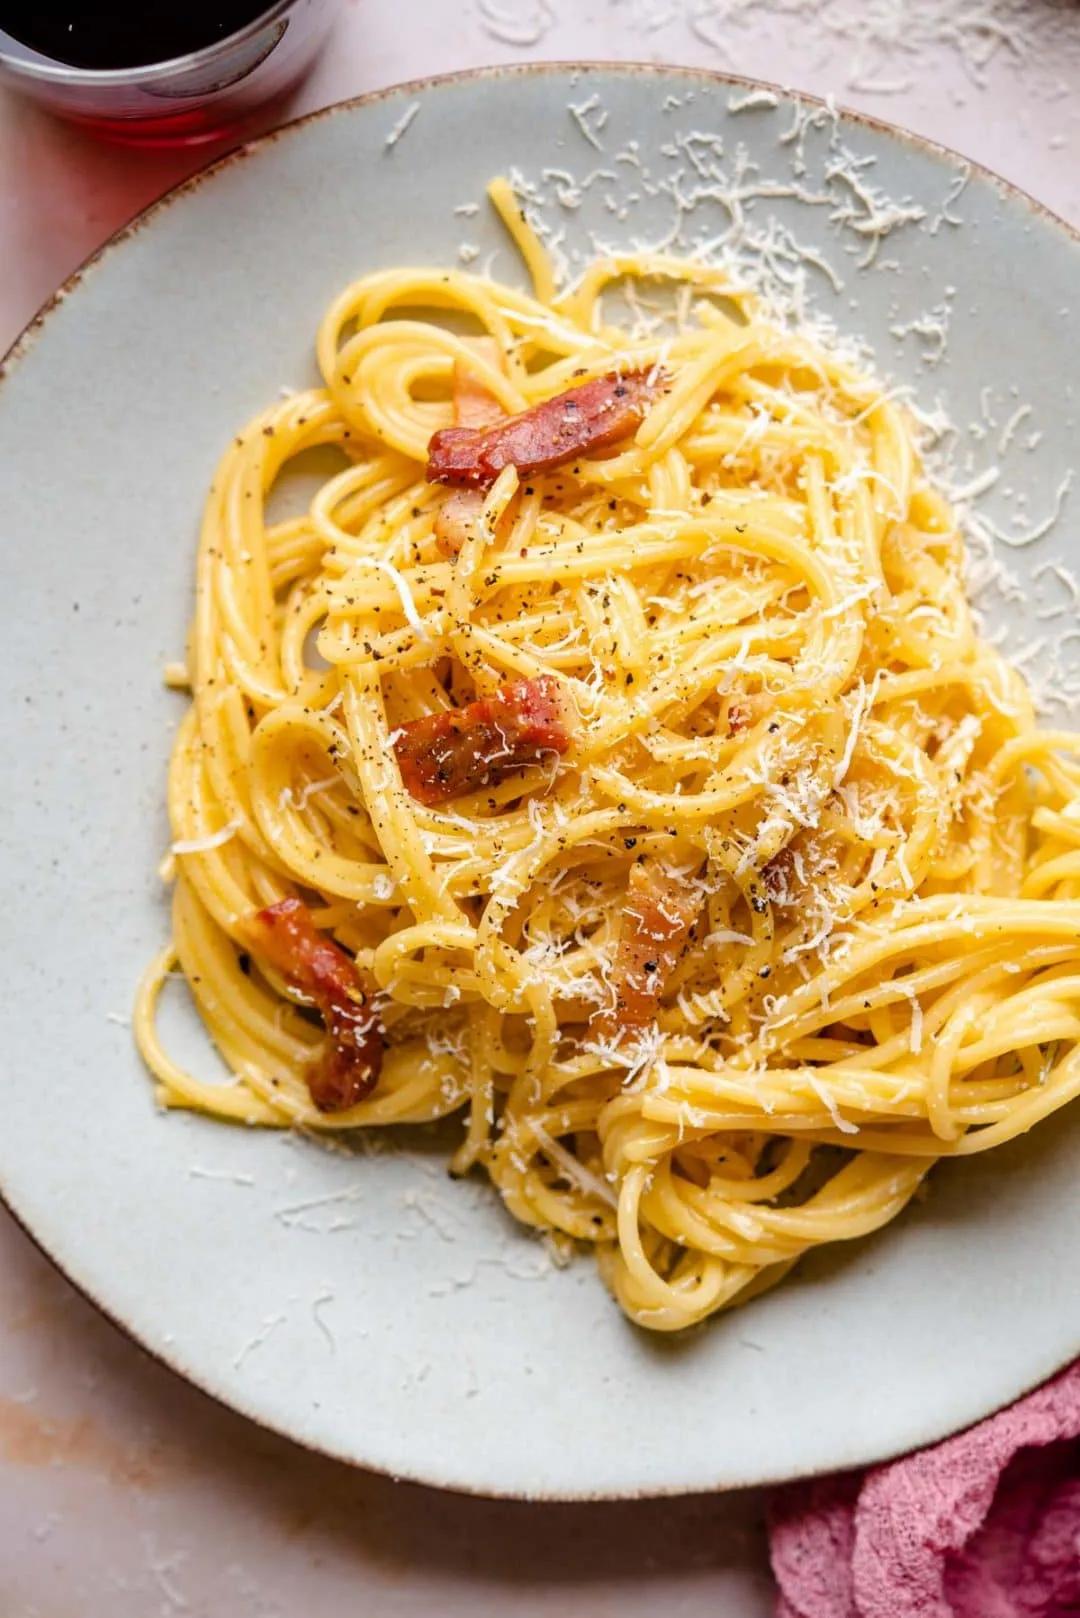 Spaghetti alla Carbonara (Authentic Recipe!) - Inside The Rustic Kitchen